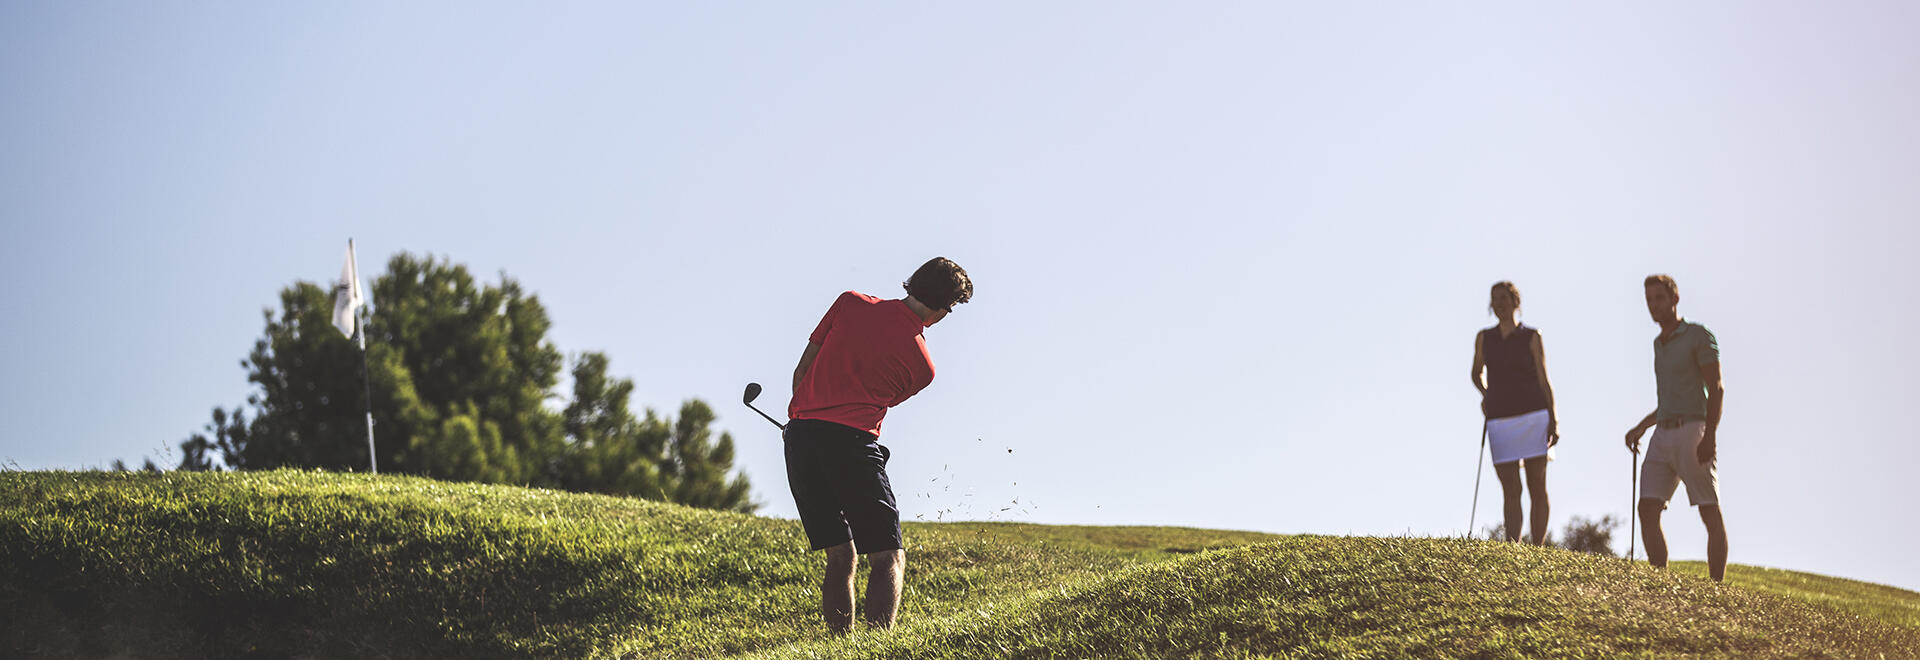 formules de jeu au golf | Decathlon Inesis